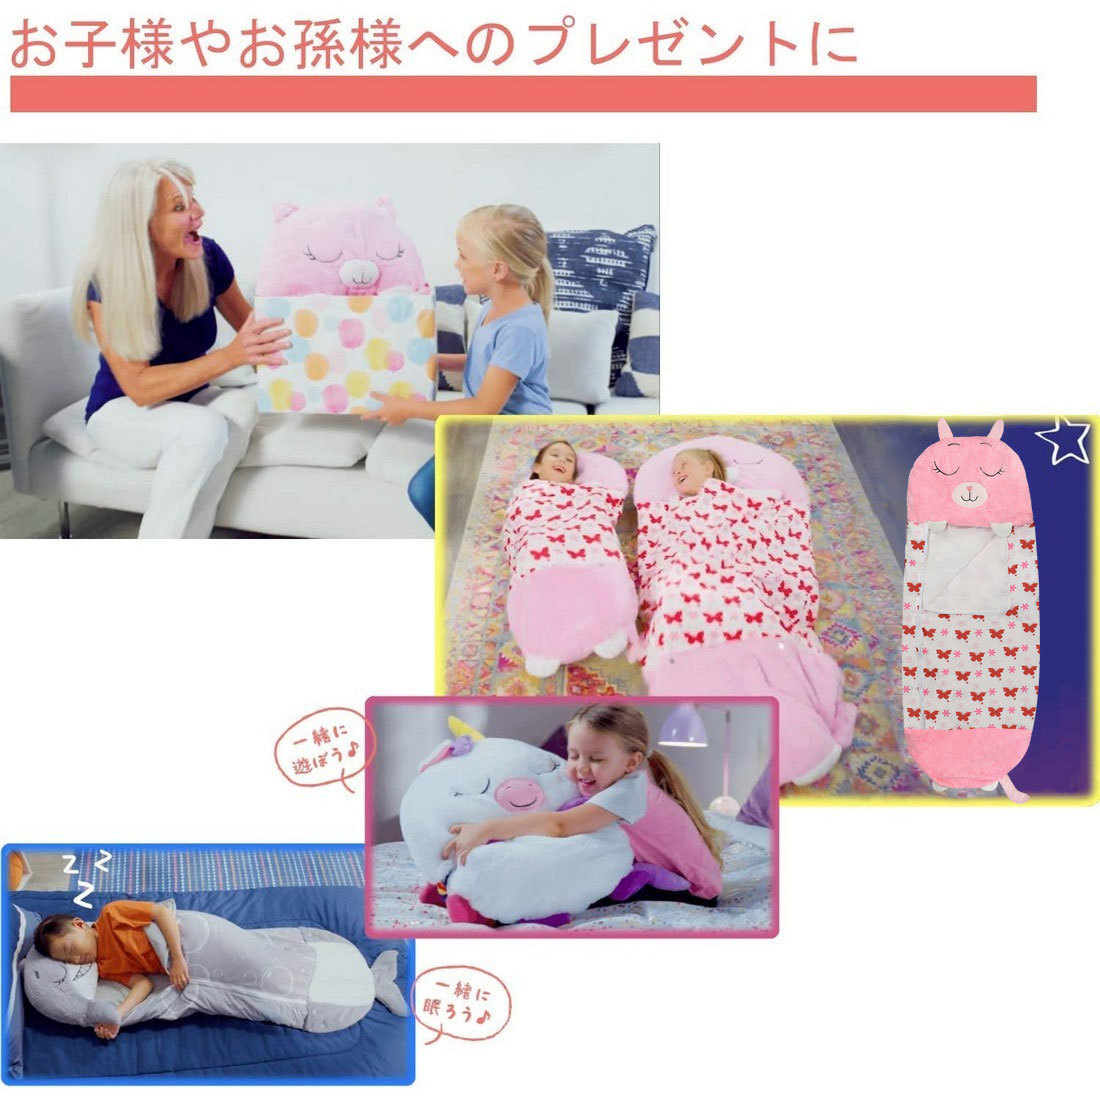  детский спальный мешок розовый ( заяц ) Kids спальный мешок кемпинг tool кемпинг сопутствующие товары 